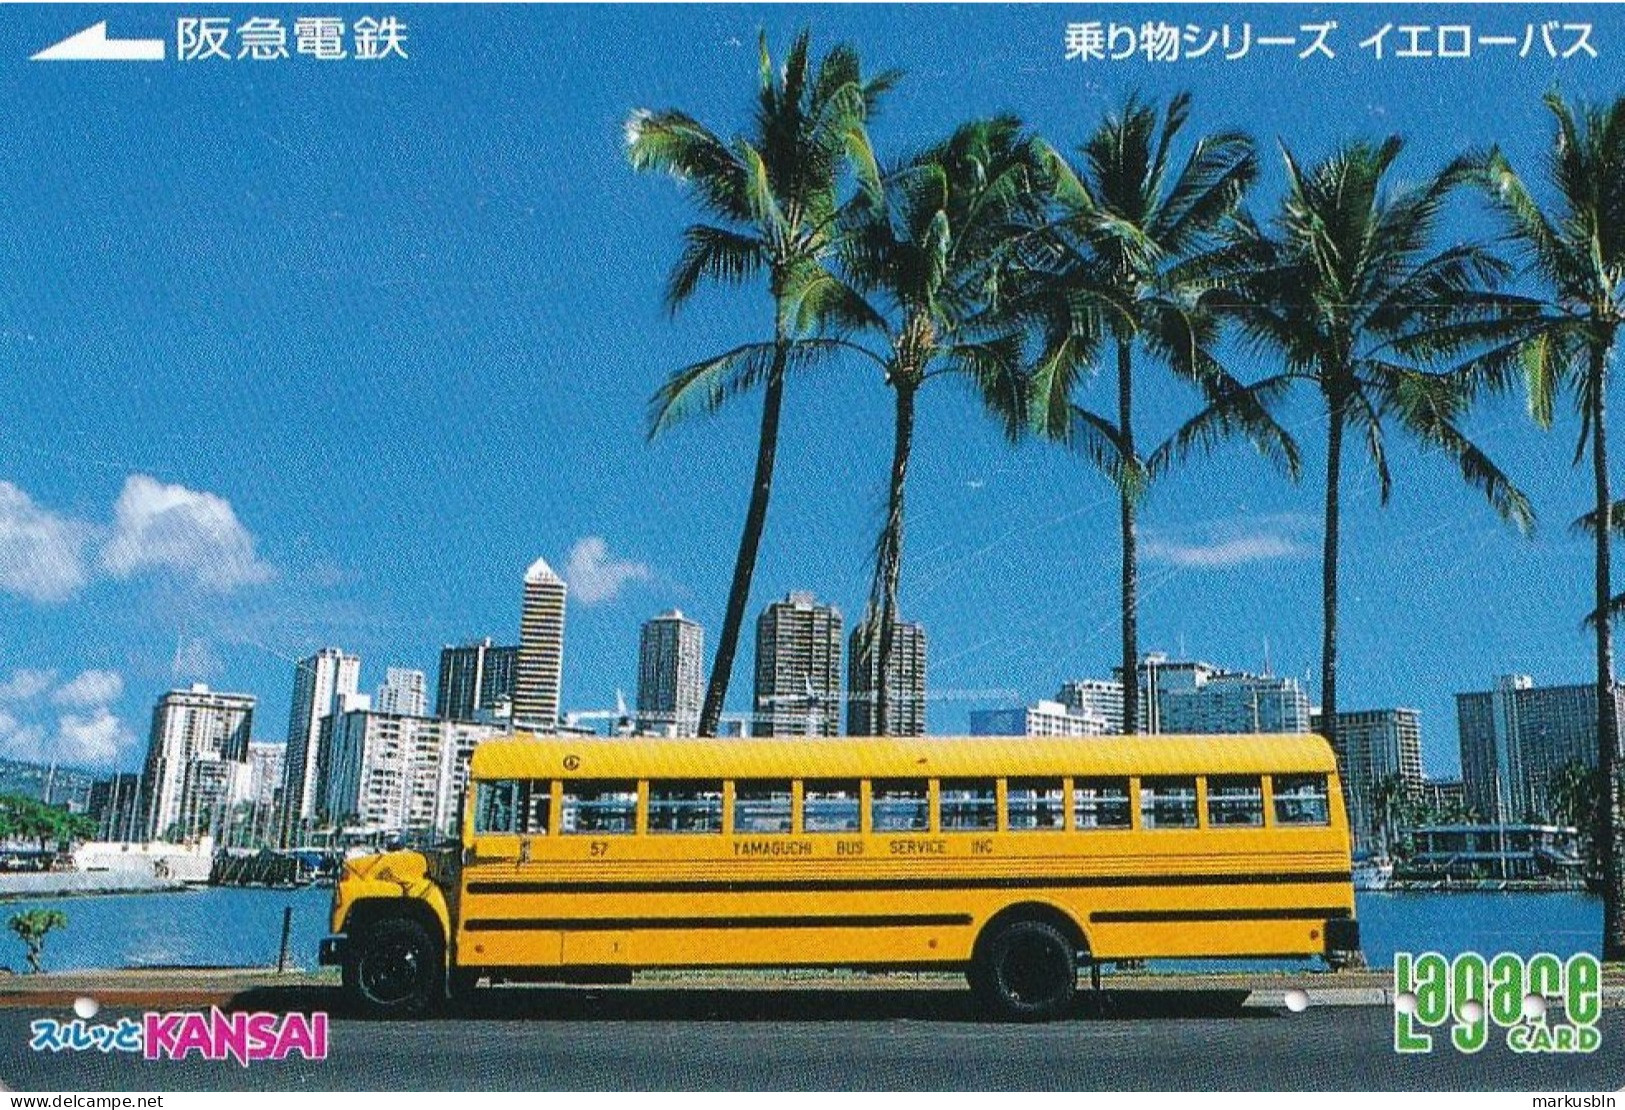 Japan Prepaid Langare Card 3000 Kansai - Miami School Bus USA Florida Skyline - Japan